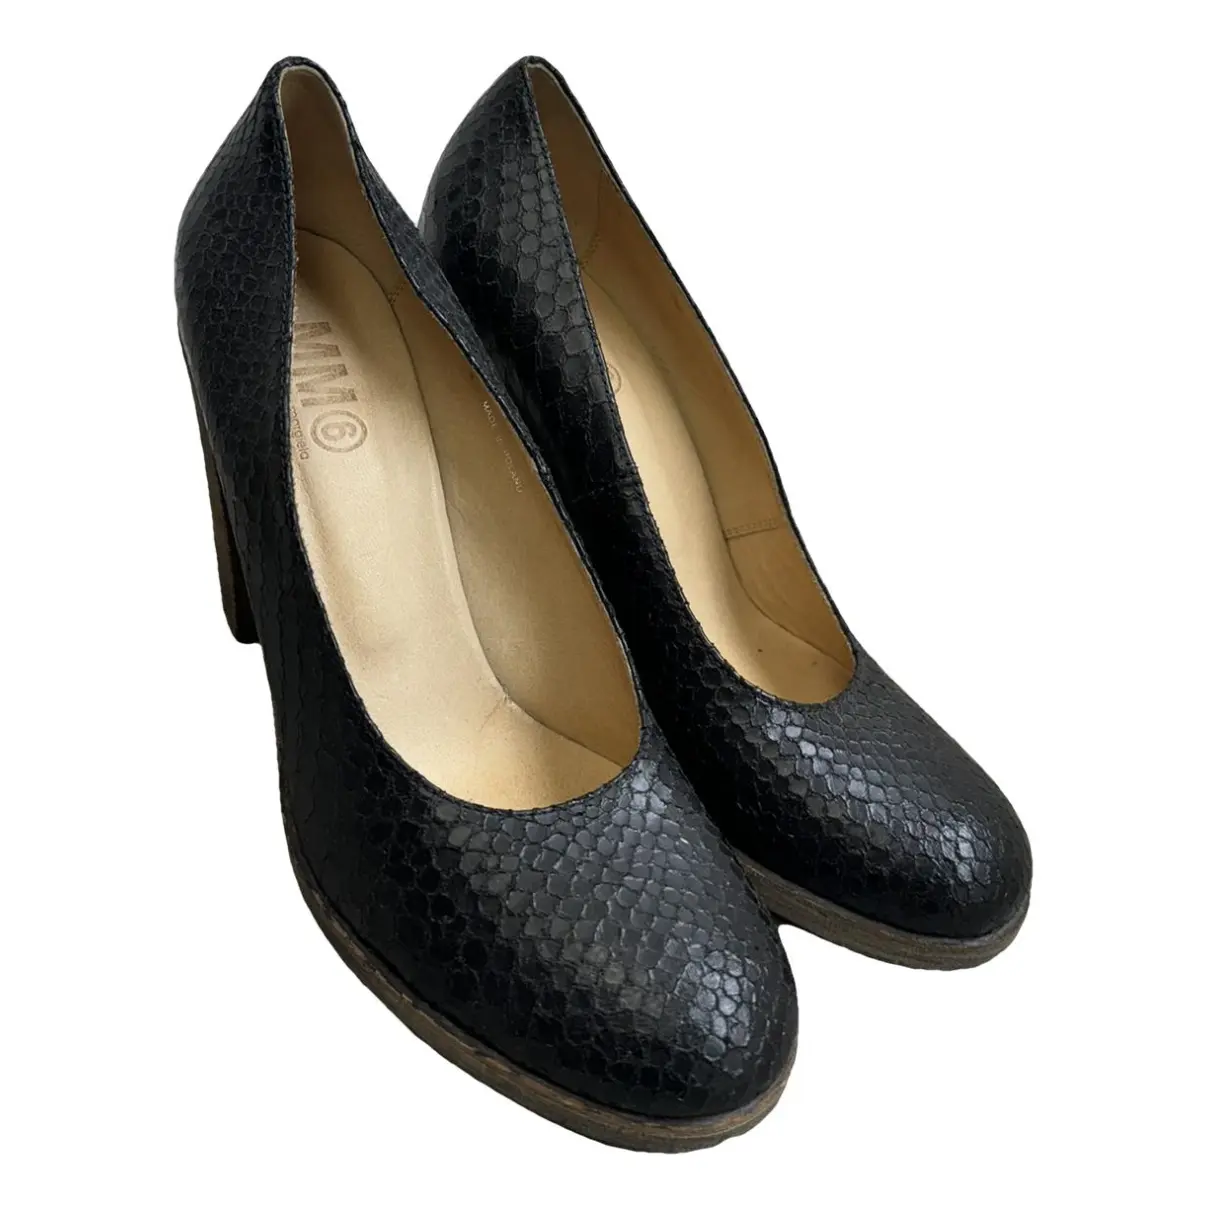 Python heels